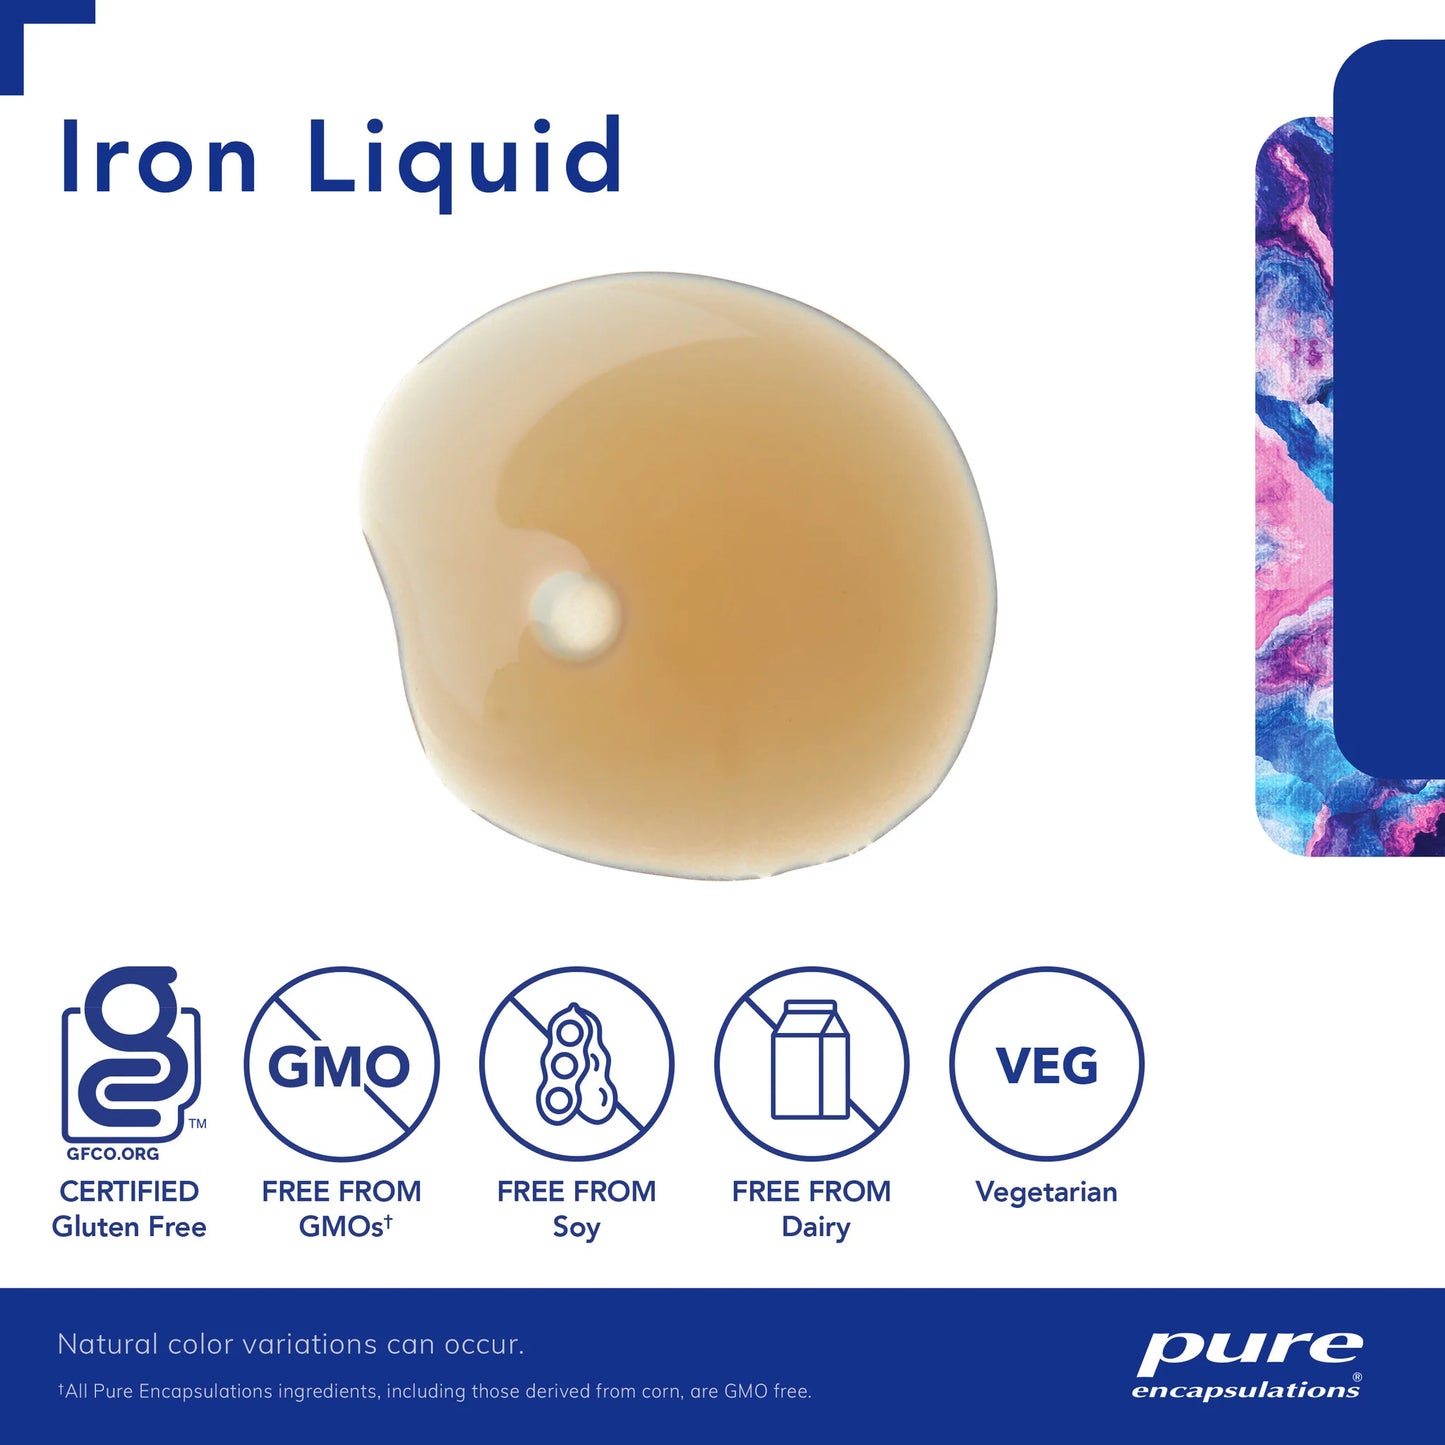 Pure Encapsulations - Iron liquid